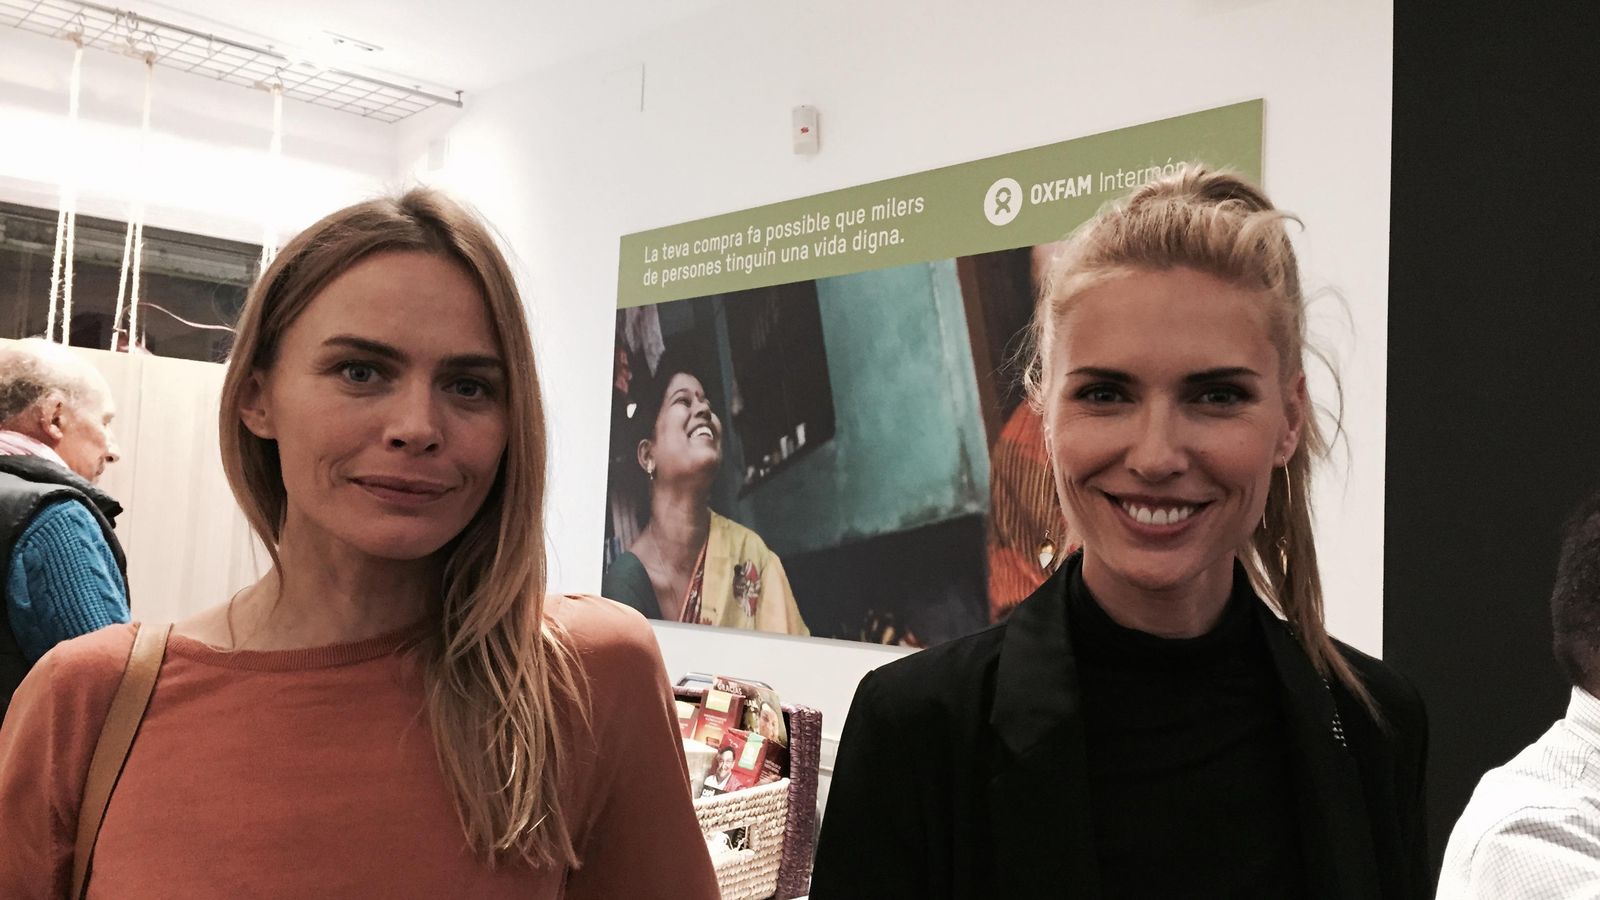 Foto: Verónica Blume y Judith Mascó en la tienda de Intermon Oxfam (Vanitatis)